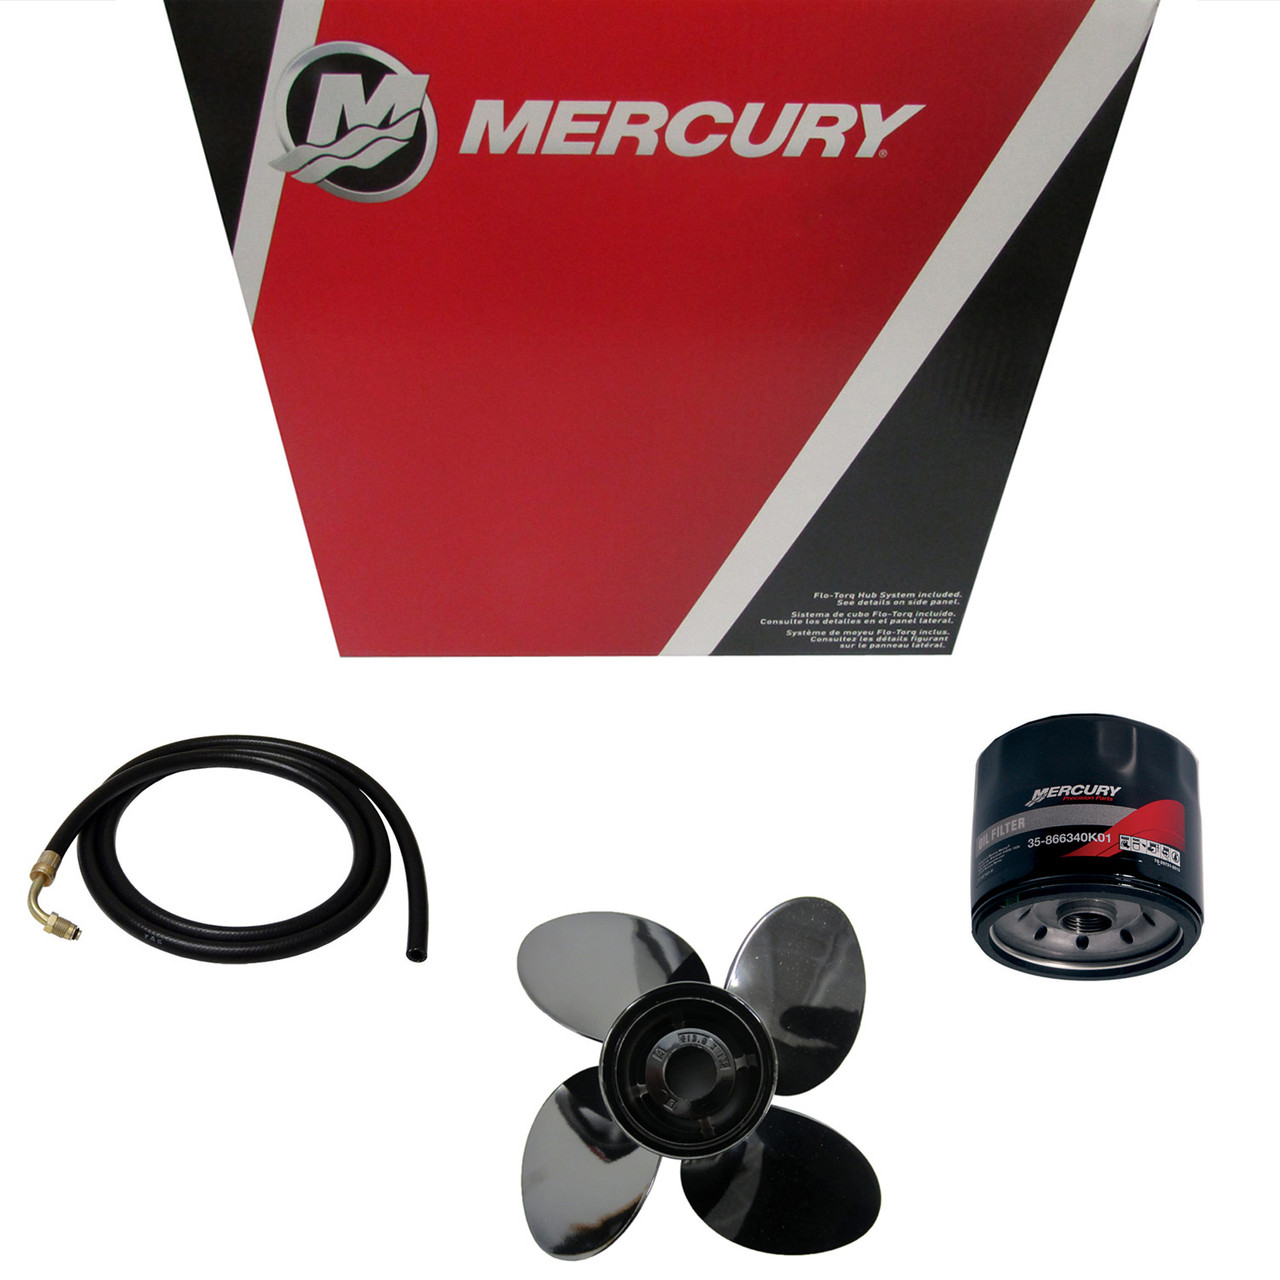 Mercury Marine / Mercruiser New OEM Plug Kit 2, 22-806608K01